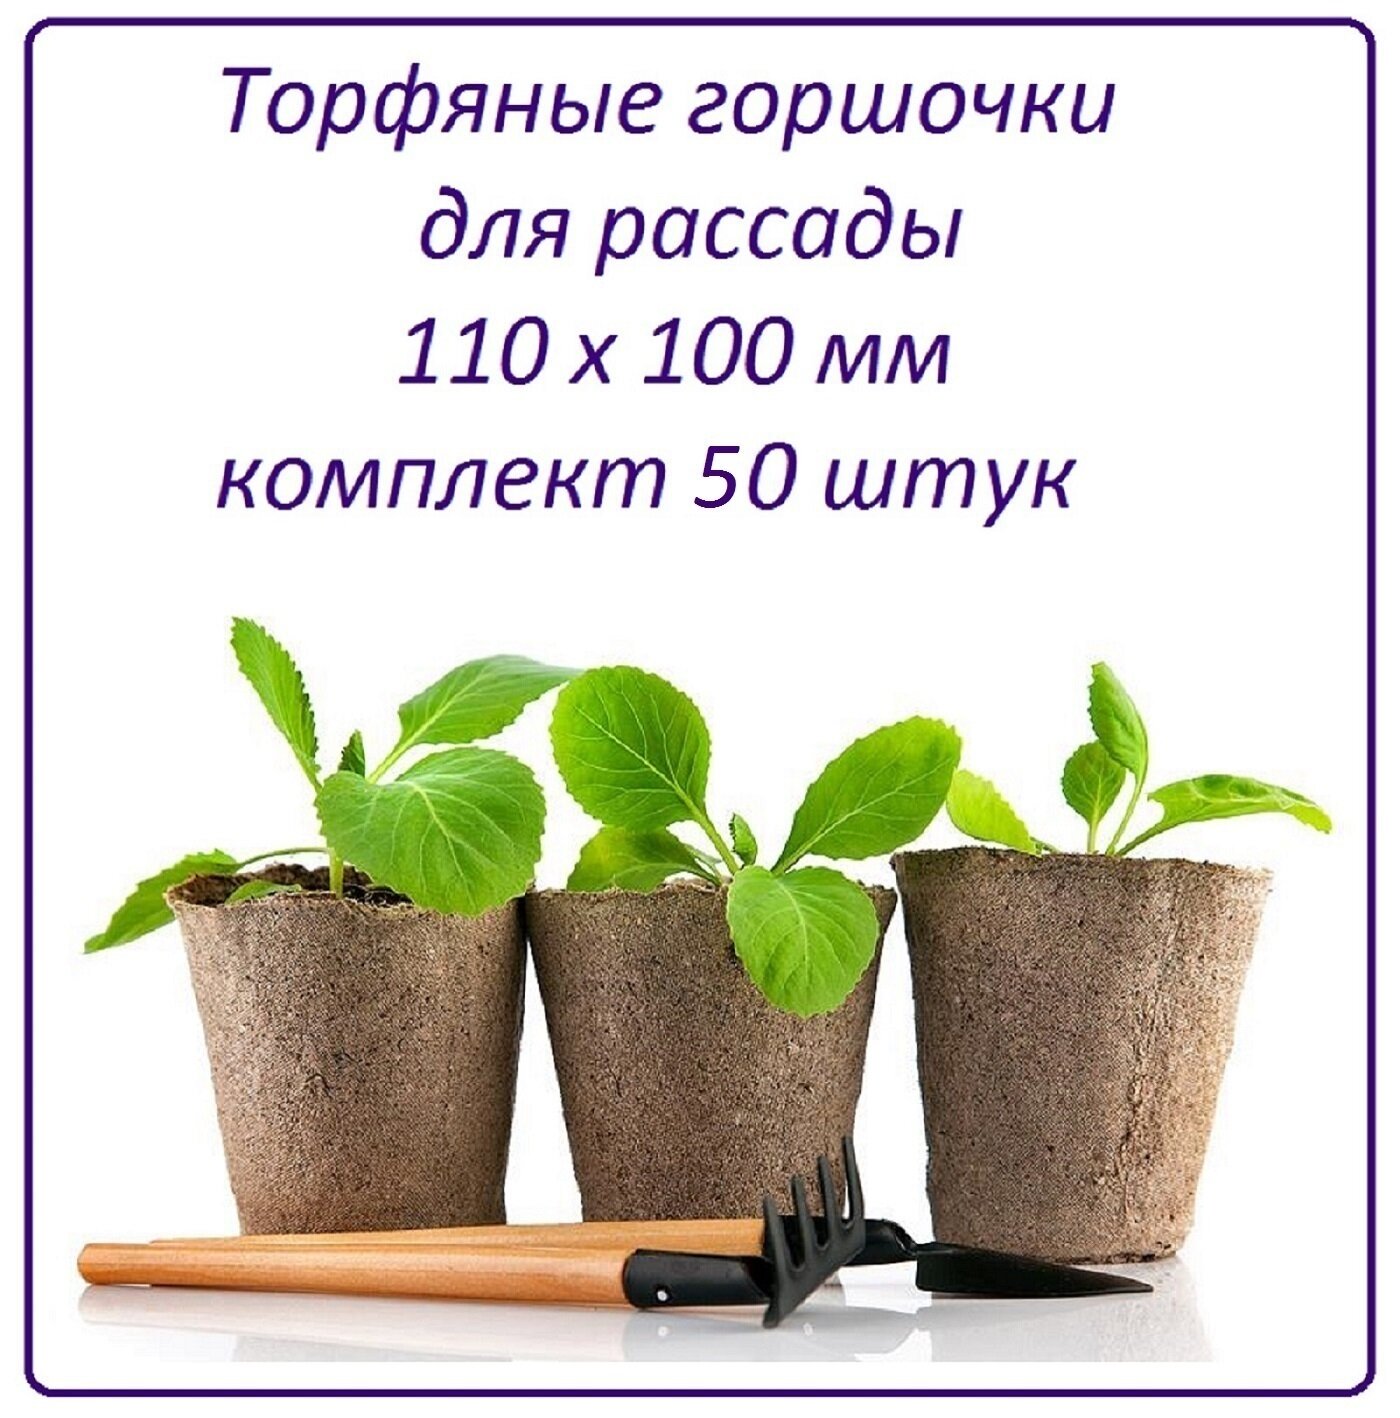 Торфяные горшочки для рассады 50 штук, d 11 см х h 10 см, набор стаканчиков для рассады всех видов овощей, цветов и растений